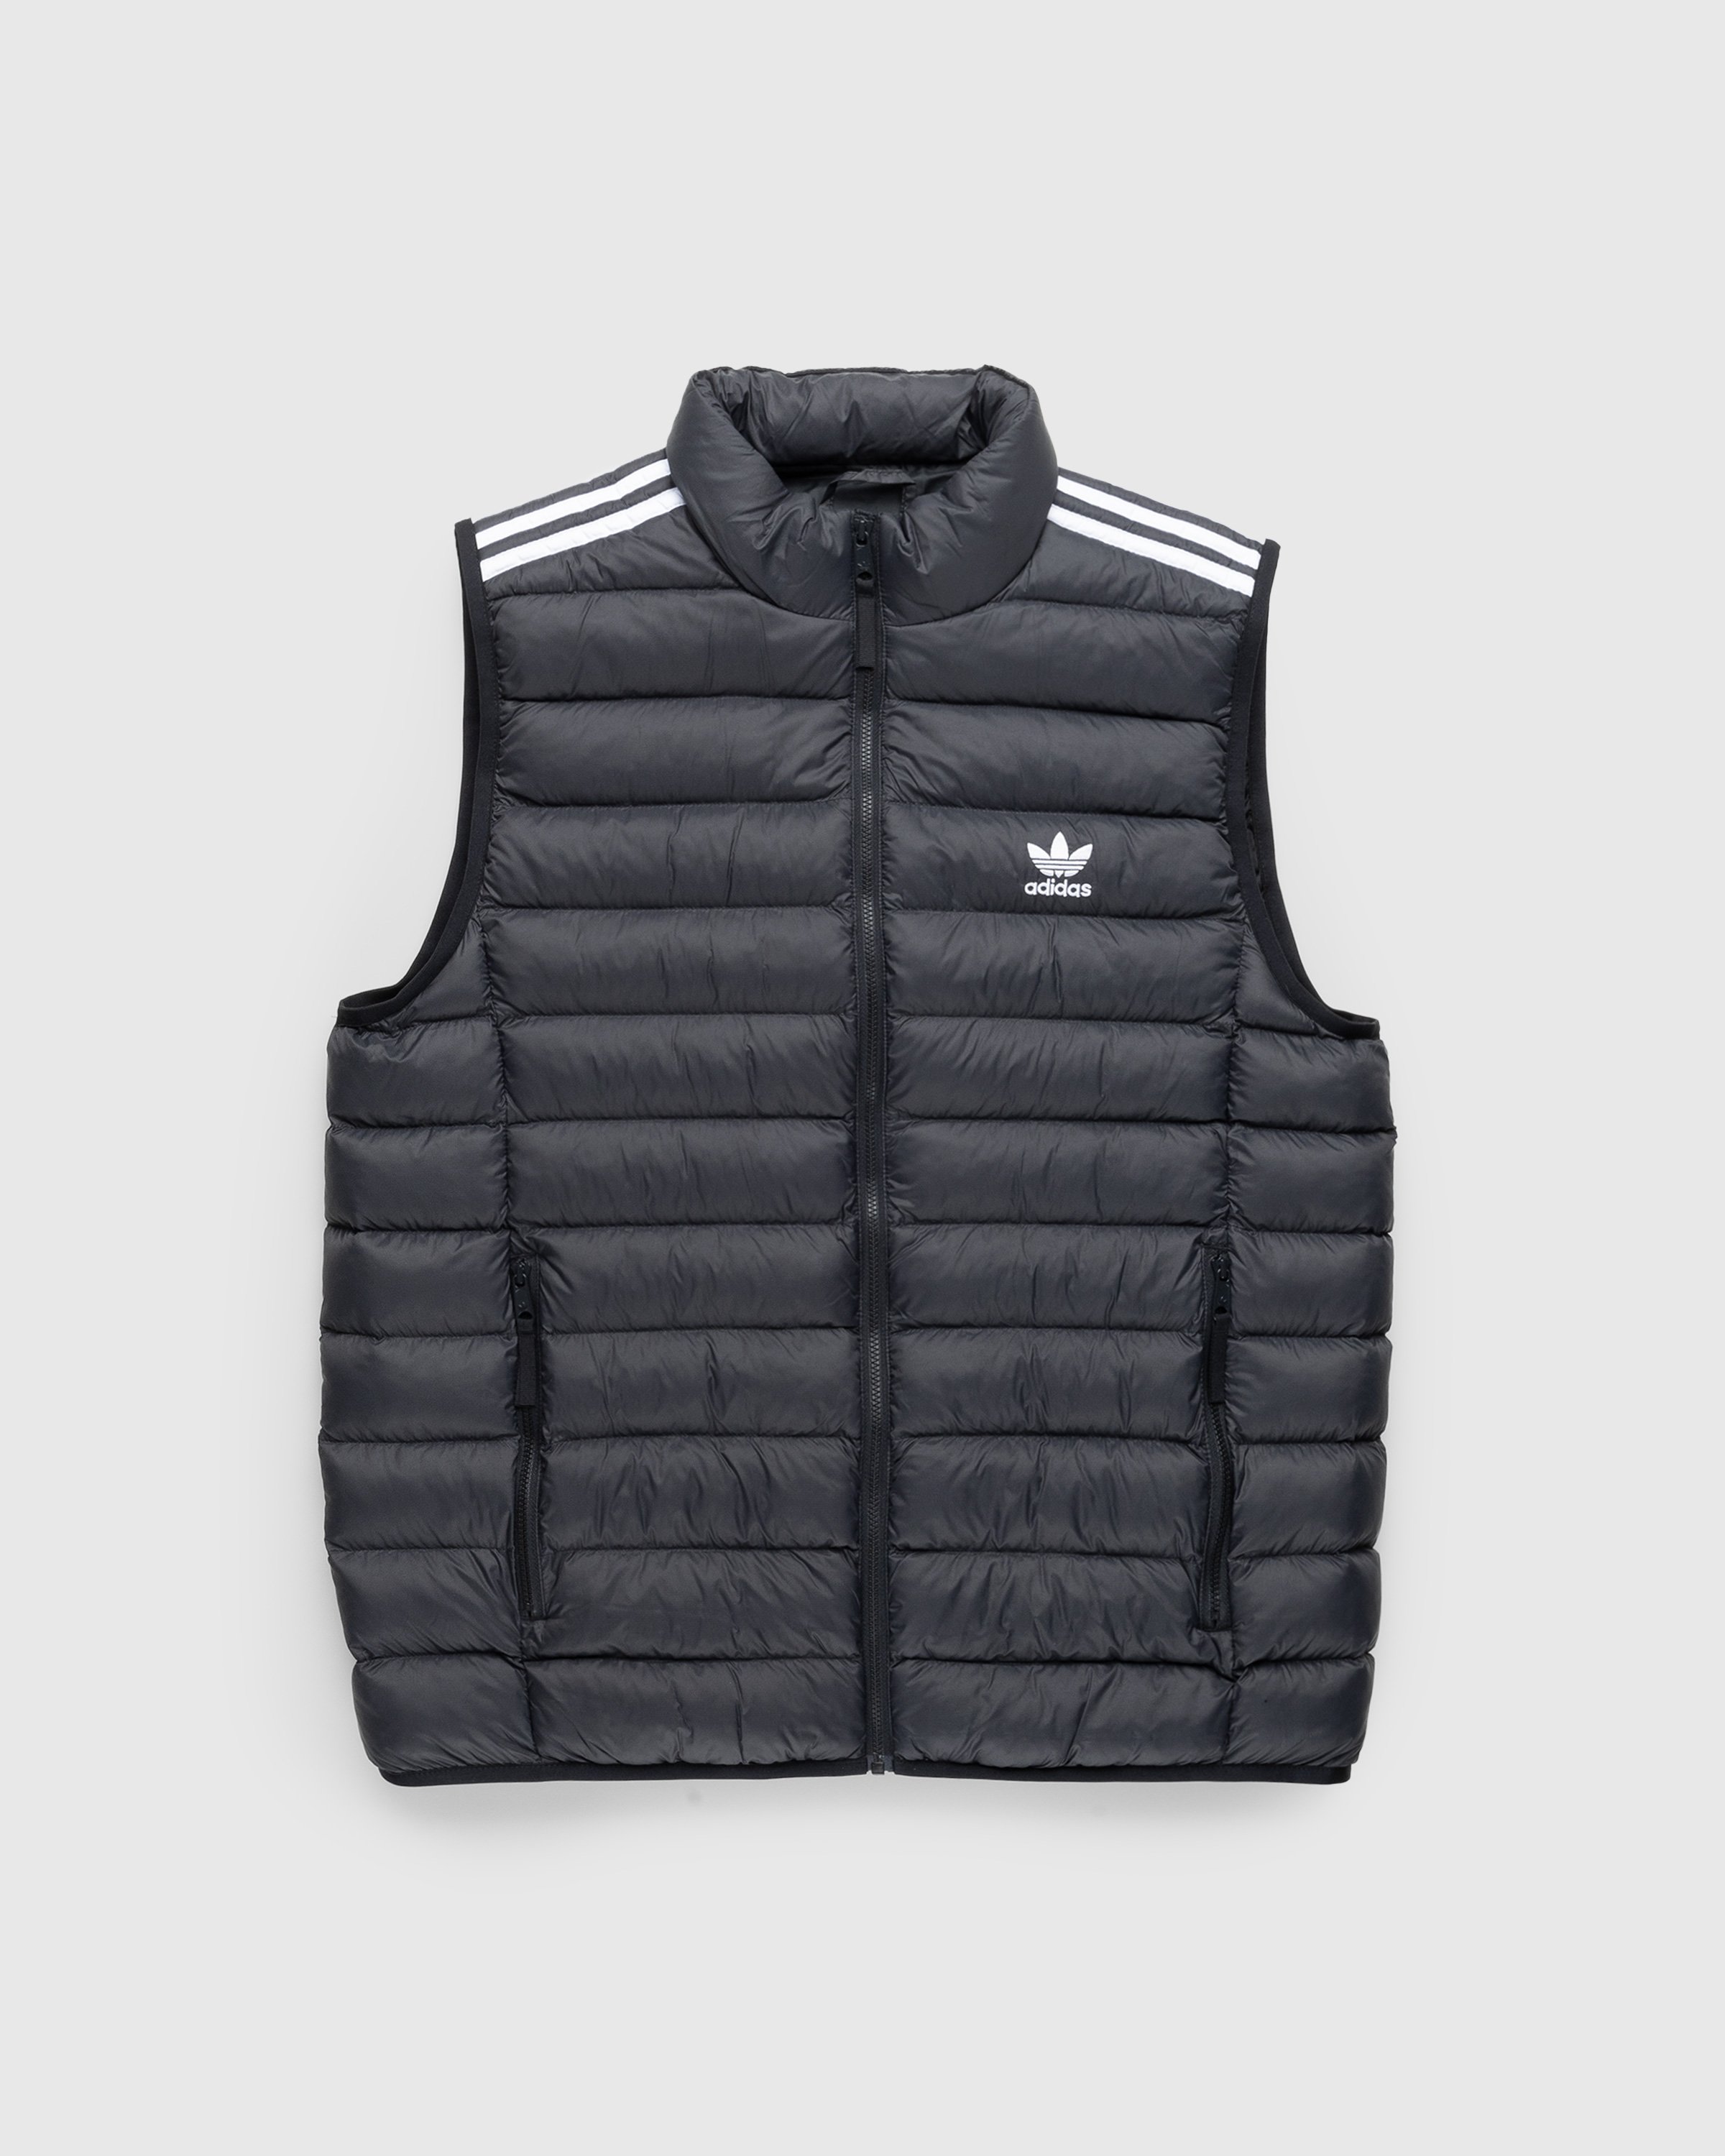 Adidas – Vest Padded Highsnobiety Shop | Black/White